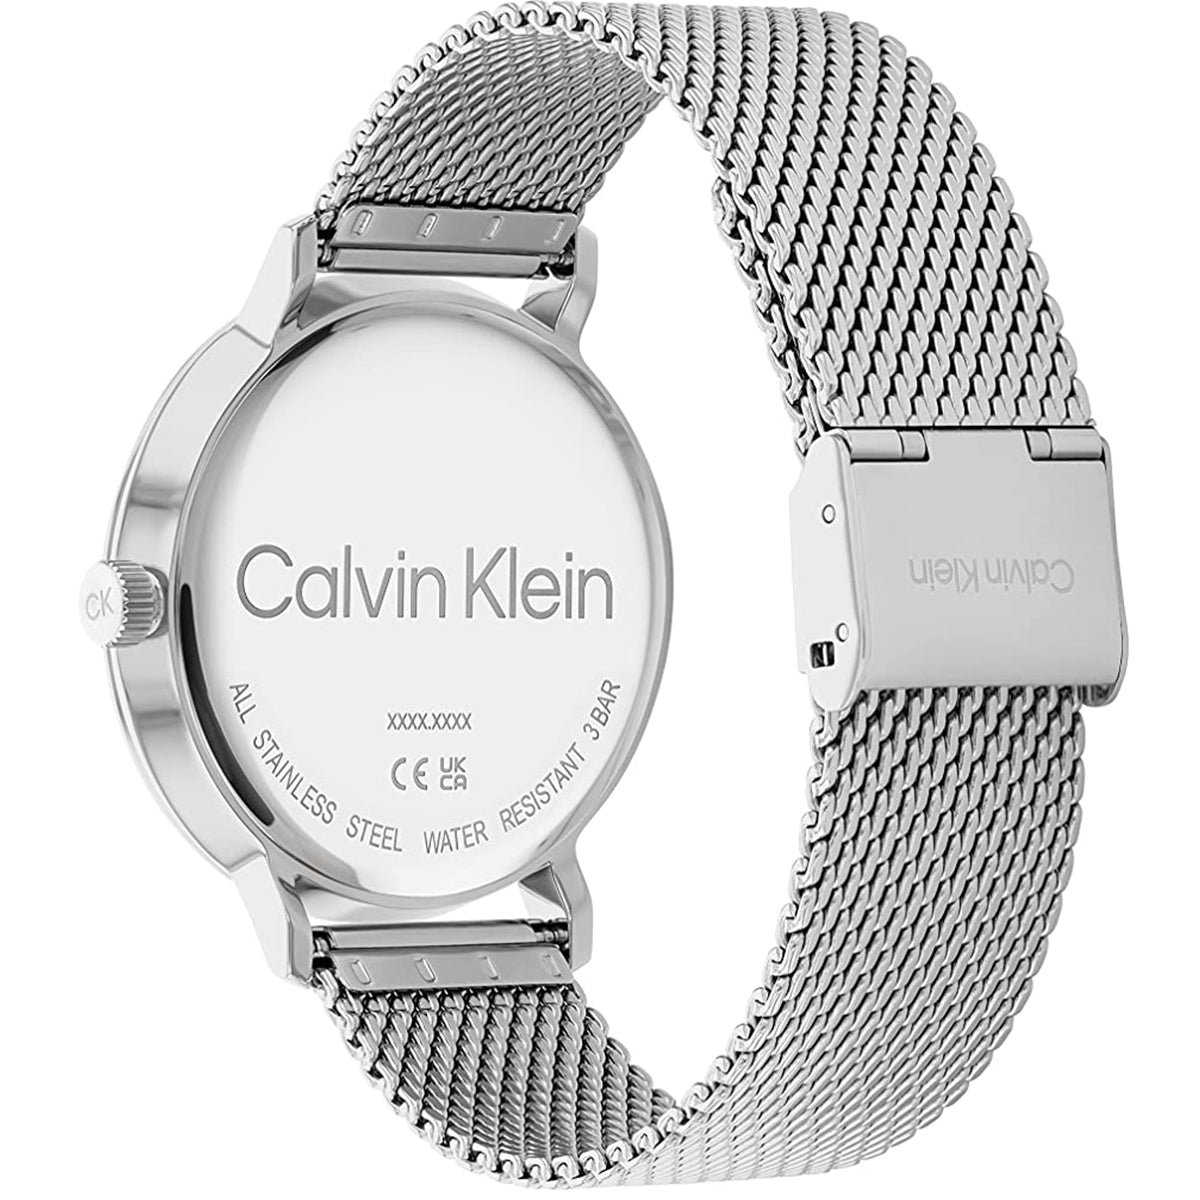 Calvin Klein - Timeless - 25200045